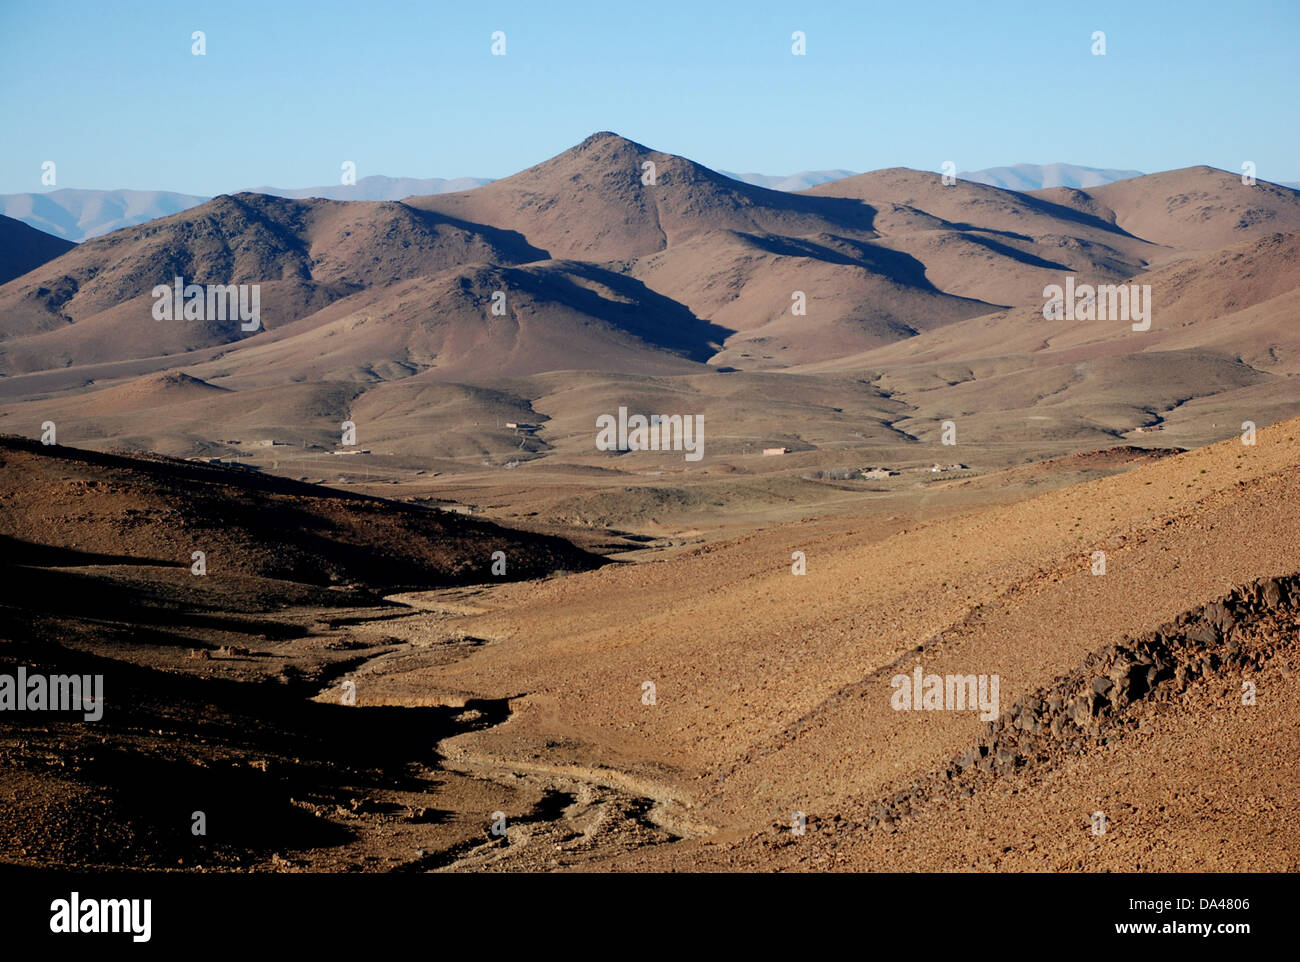 View of mountainous desert landscape, Djebel Sarhro, Anti-Atlas, Atlas Mountains, Morocco, February Stock Photo